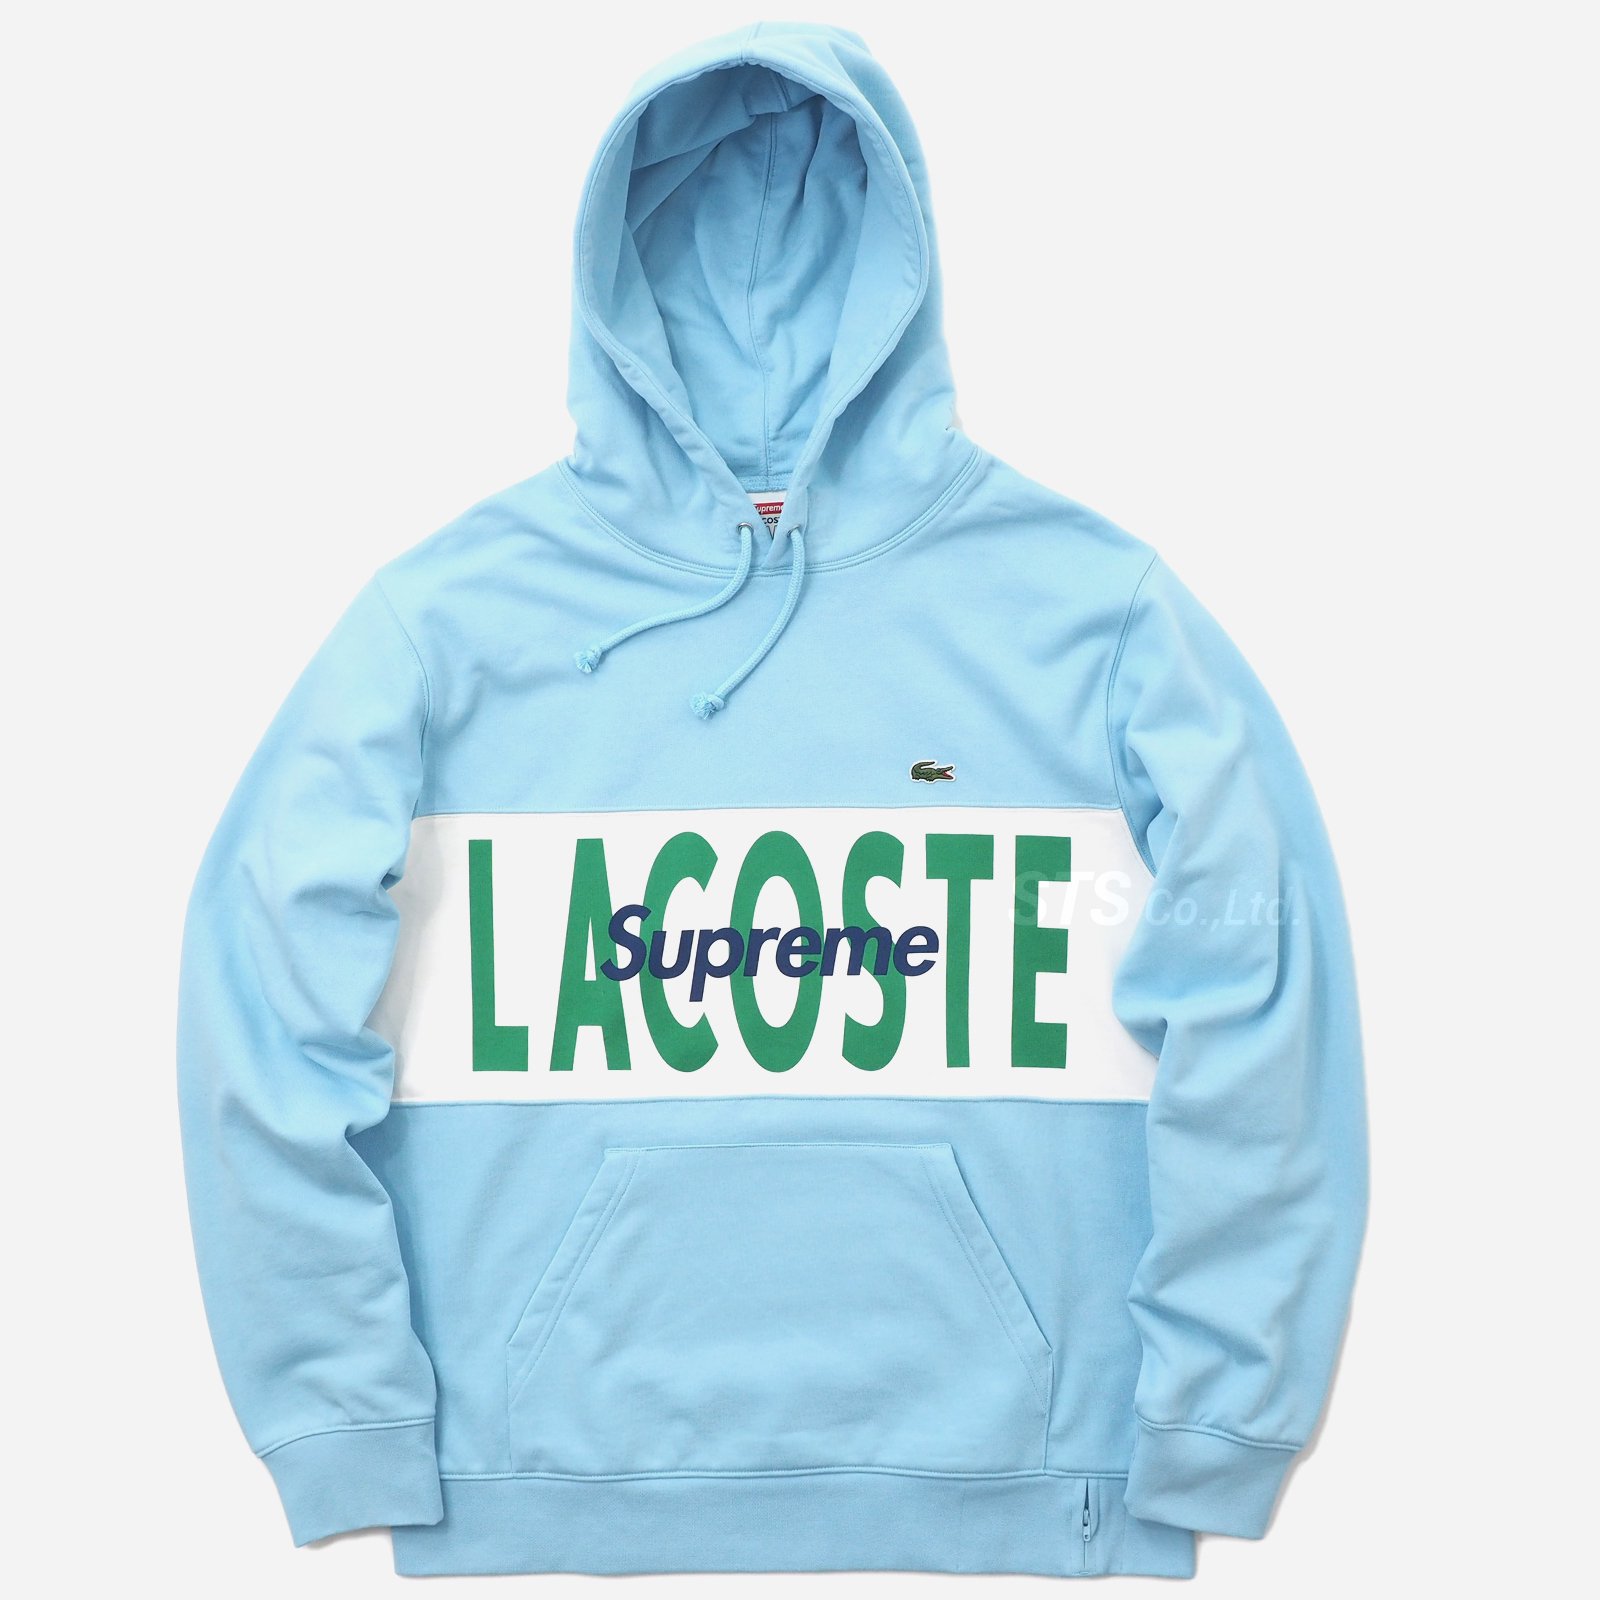 Supreme/LACOSTE Logo Panel Hooded Sweatshirt - UG.SHAFT